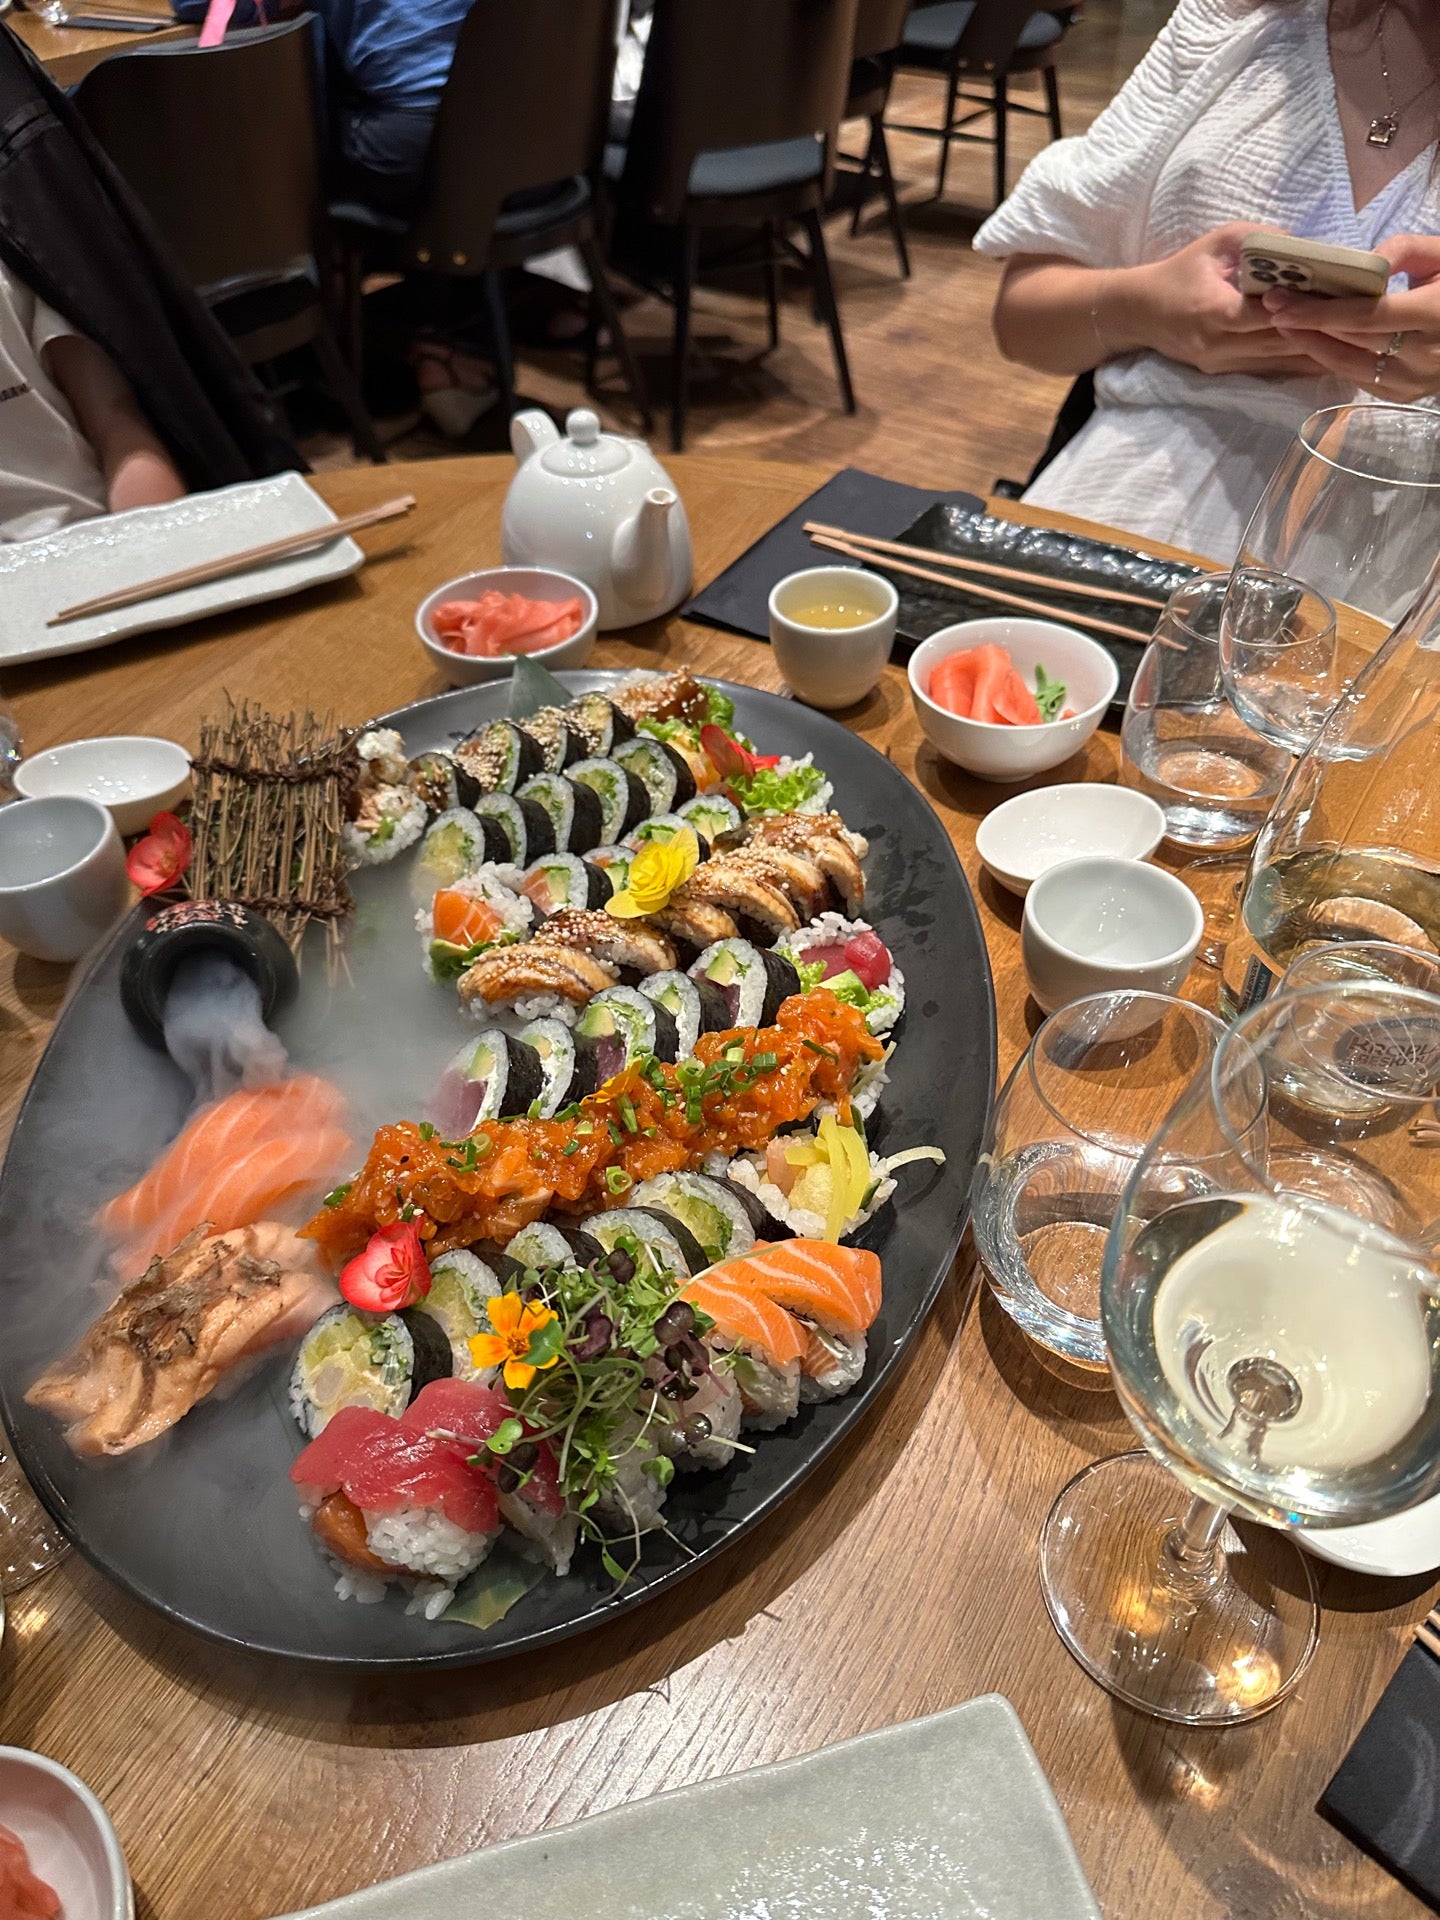 Wabu Sushi & Japanese Tapas